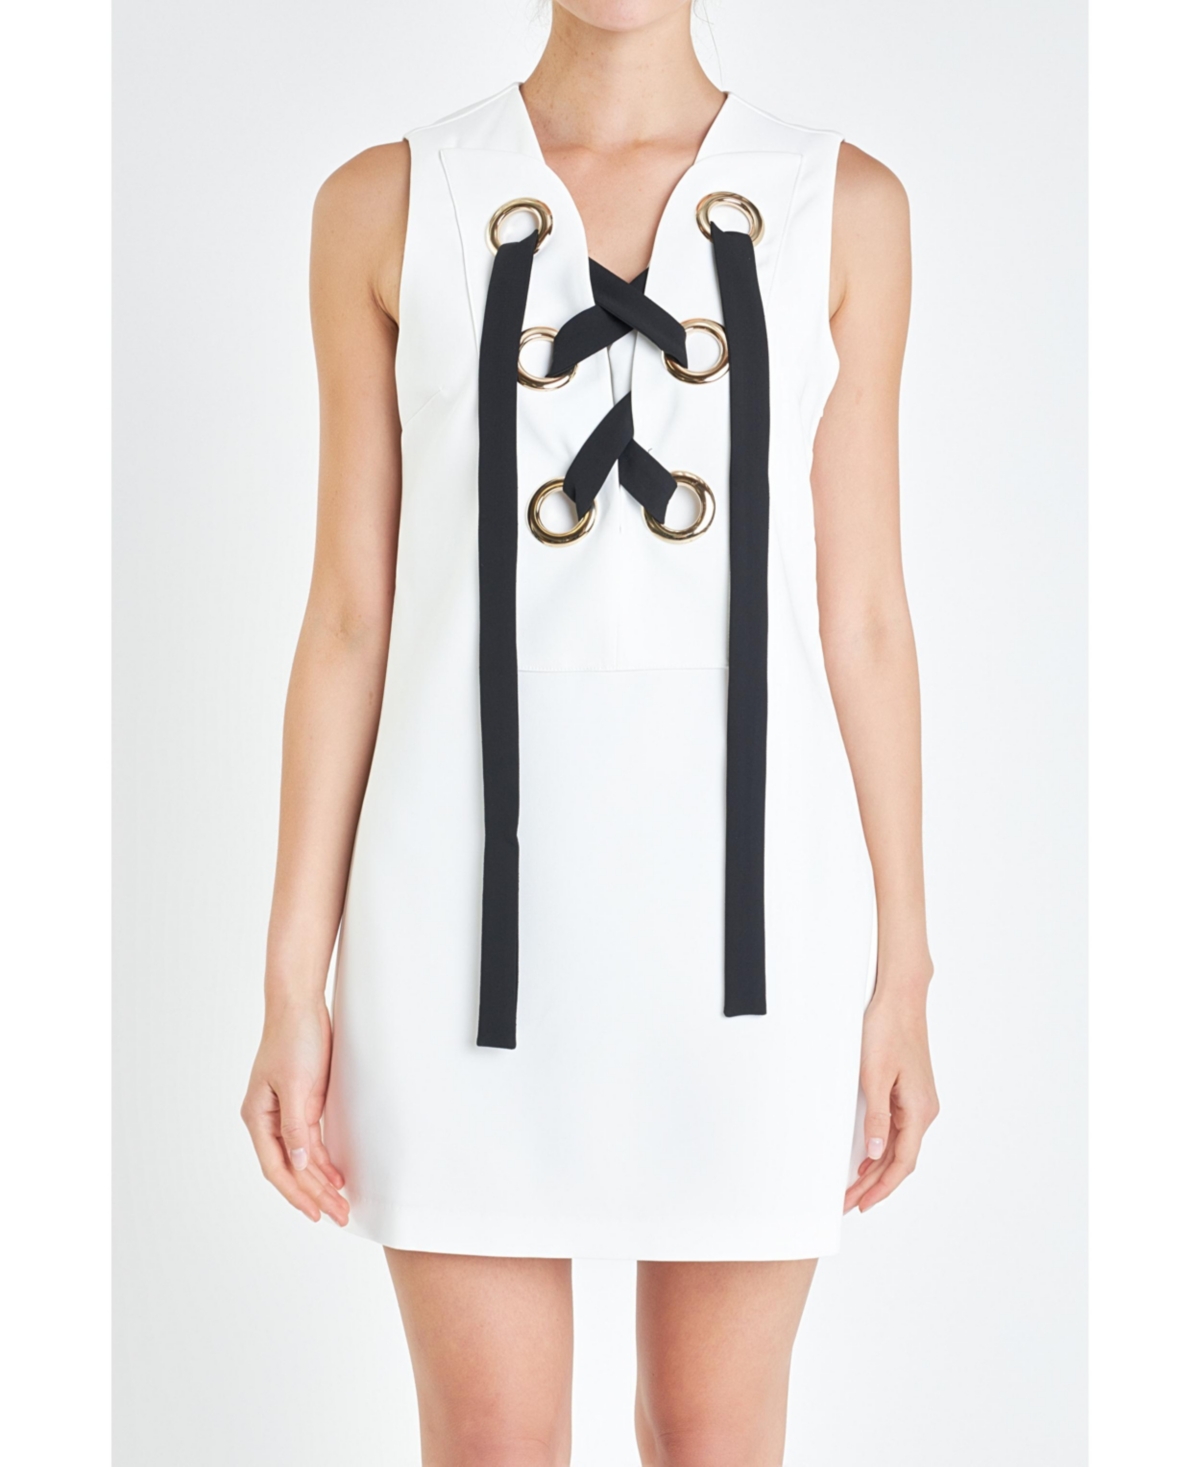 Women's Eyelet Mini Dress - Off white/black